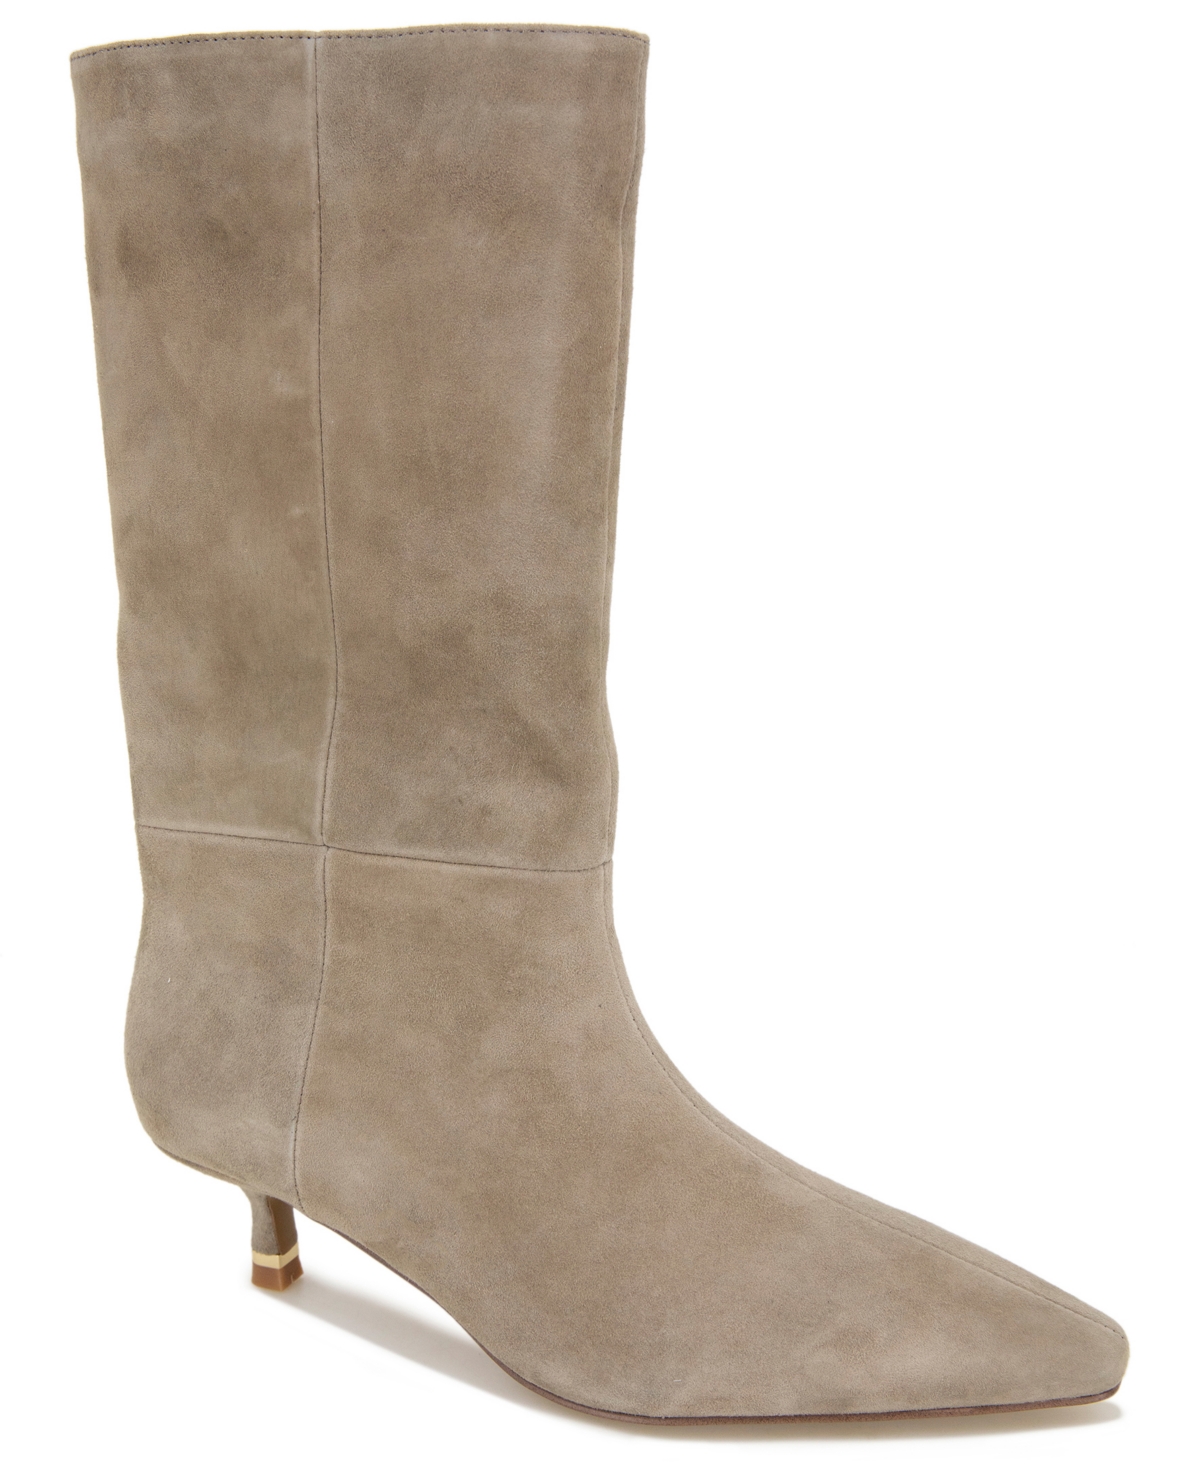 Women's Meryl Kitten Heel Boots - Taupe